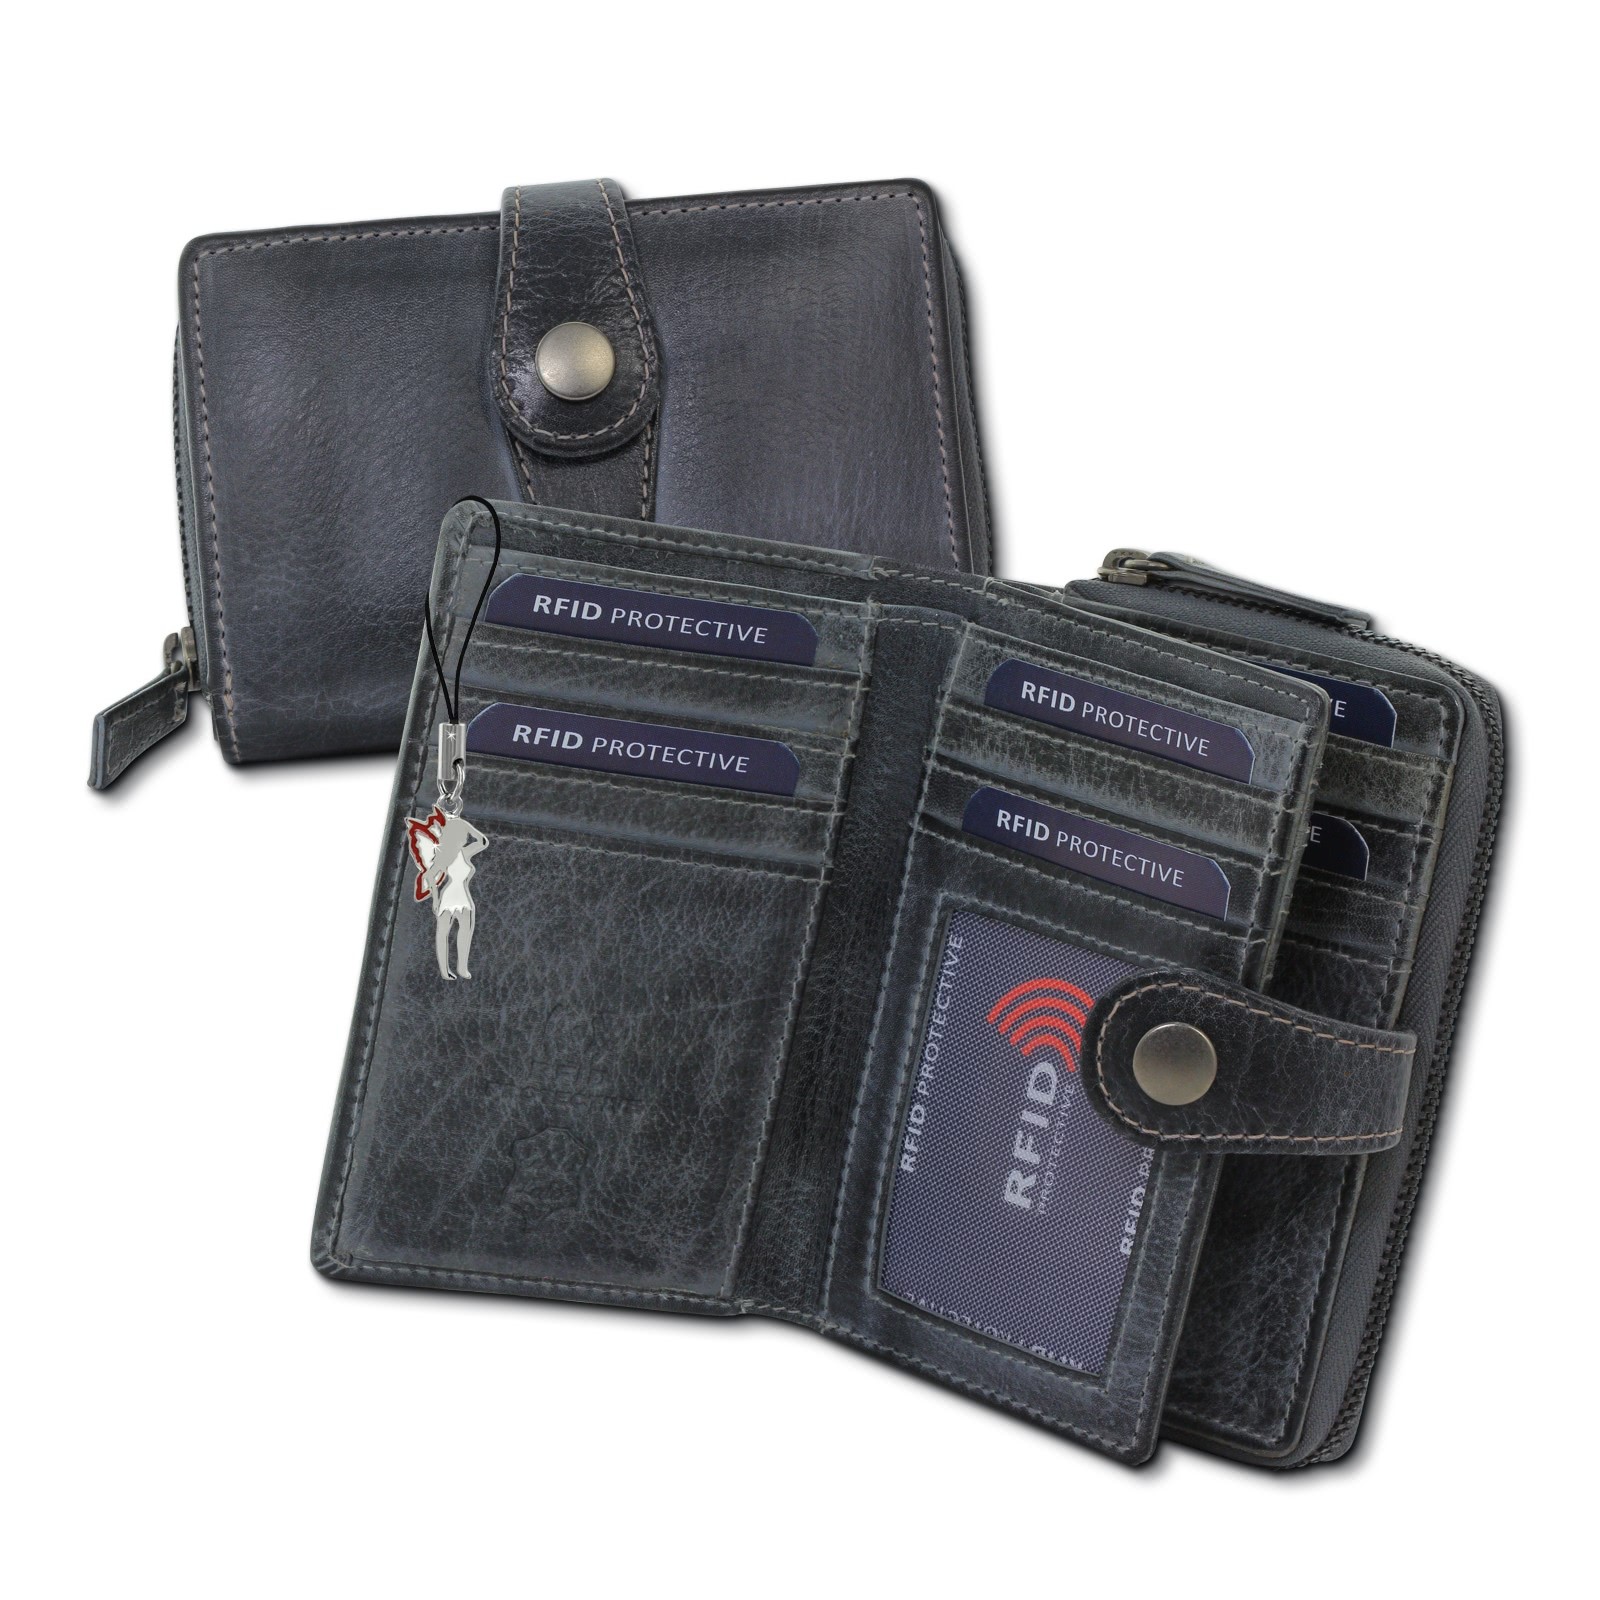 DrachenLeder Geldbörse Leder grau Portemonnaie Brieftasche RFID Schutz OPD210K